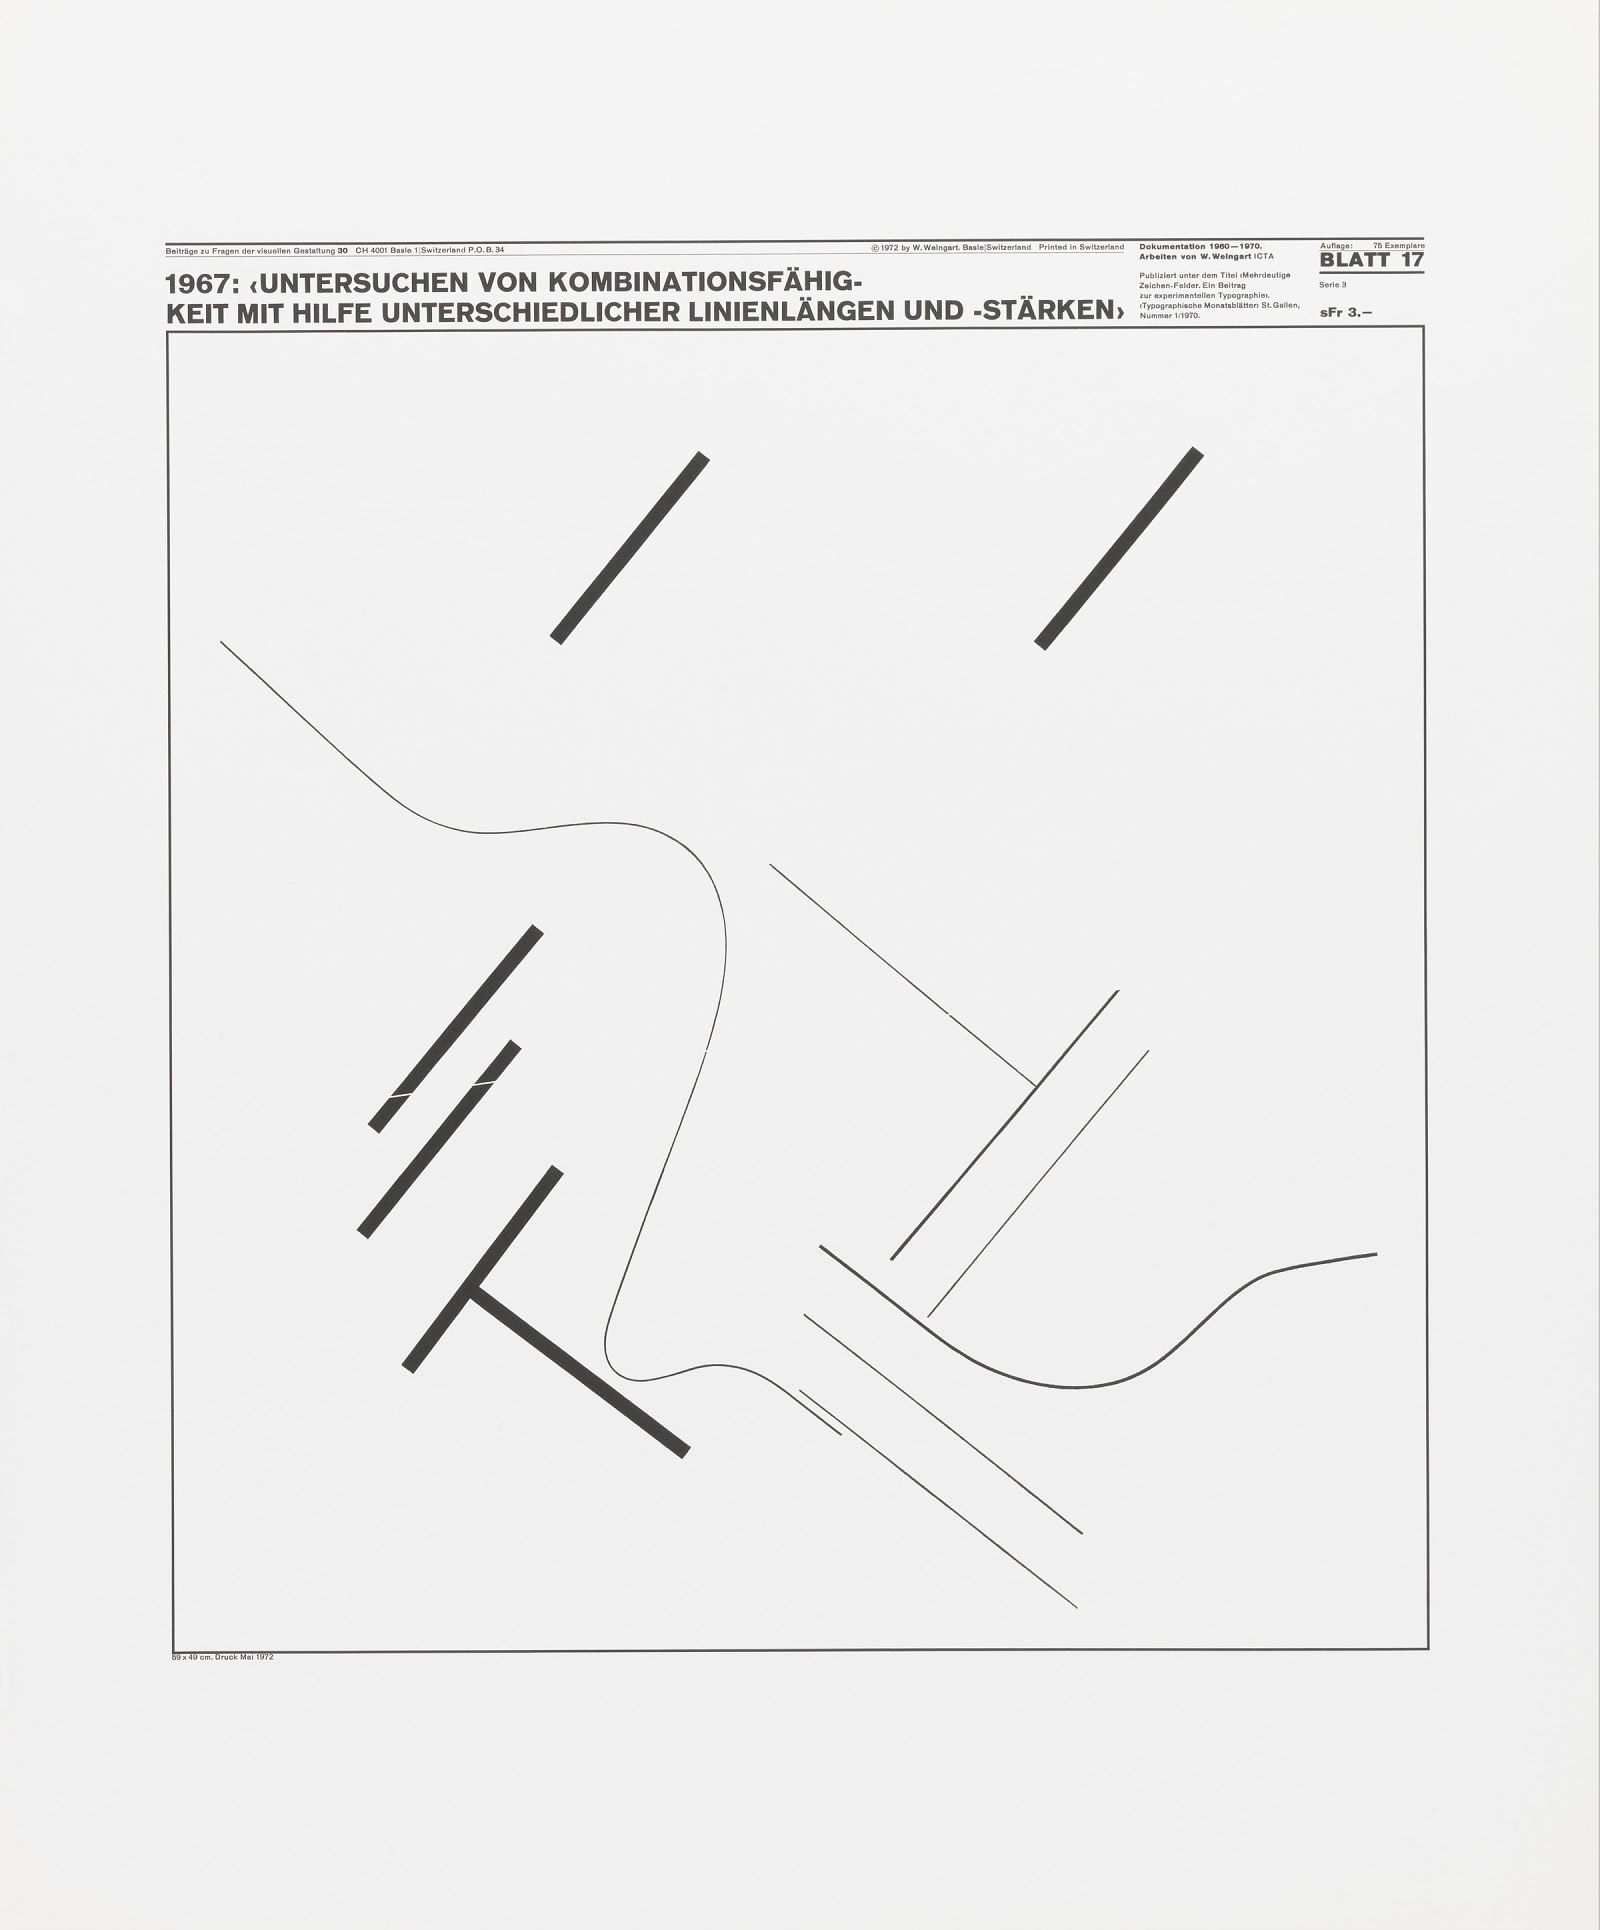 Wolfgang Weingart: Beiträge zu Fragen der visuellen Gestaltung 30, Blatt 17 from the portfolio Dokumentation 1960—1970, Arbeiten von W. Weingart, Designed 1967. Lithograph. (58.9 x 49 cm)